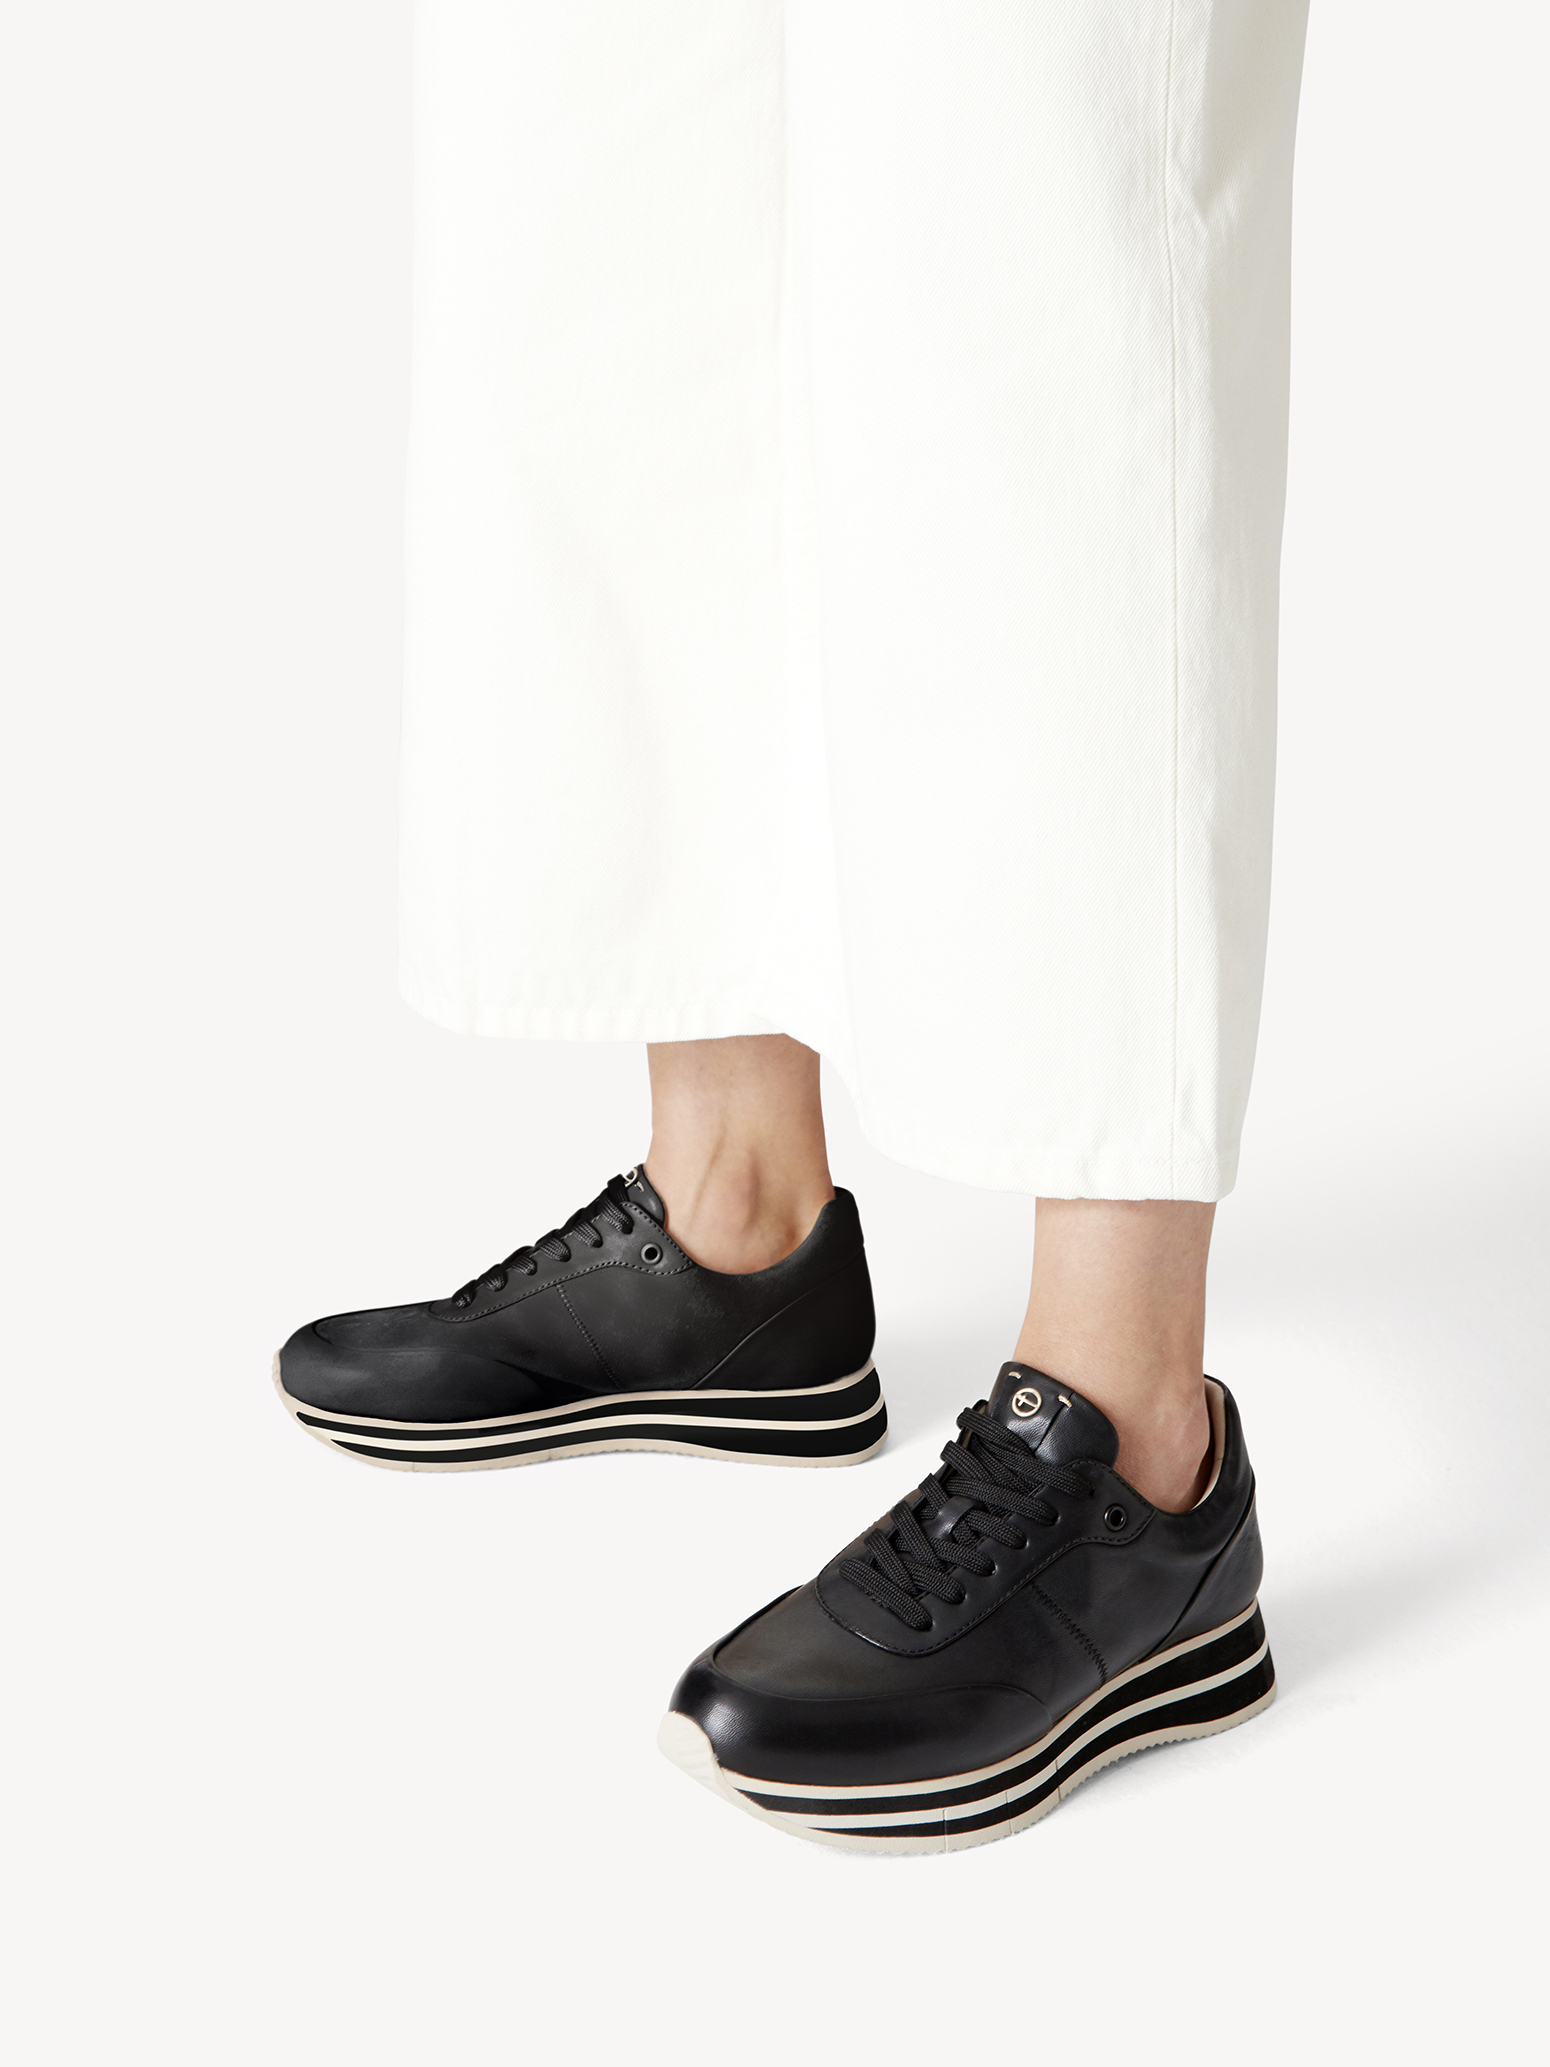 Ботинки на шнурках женские (черный) - изображение №1